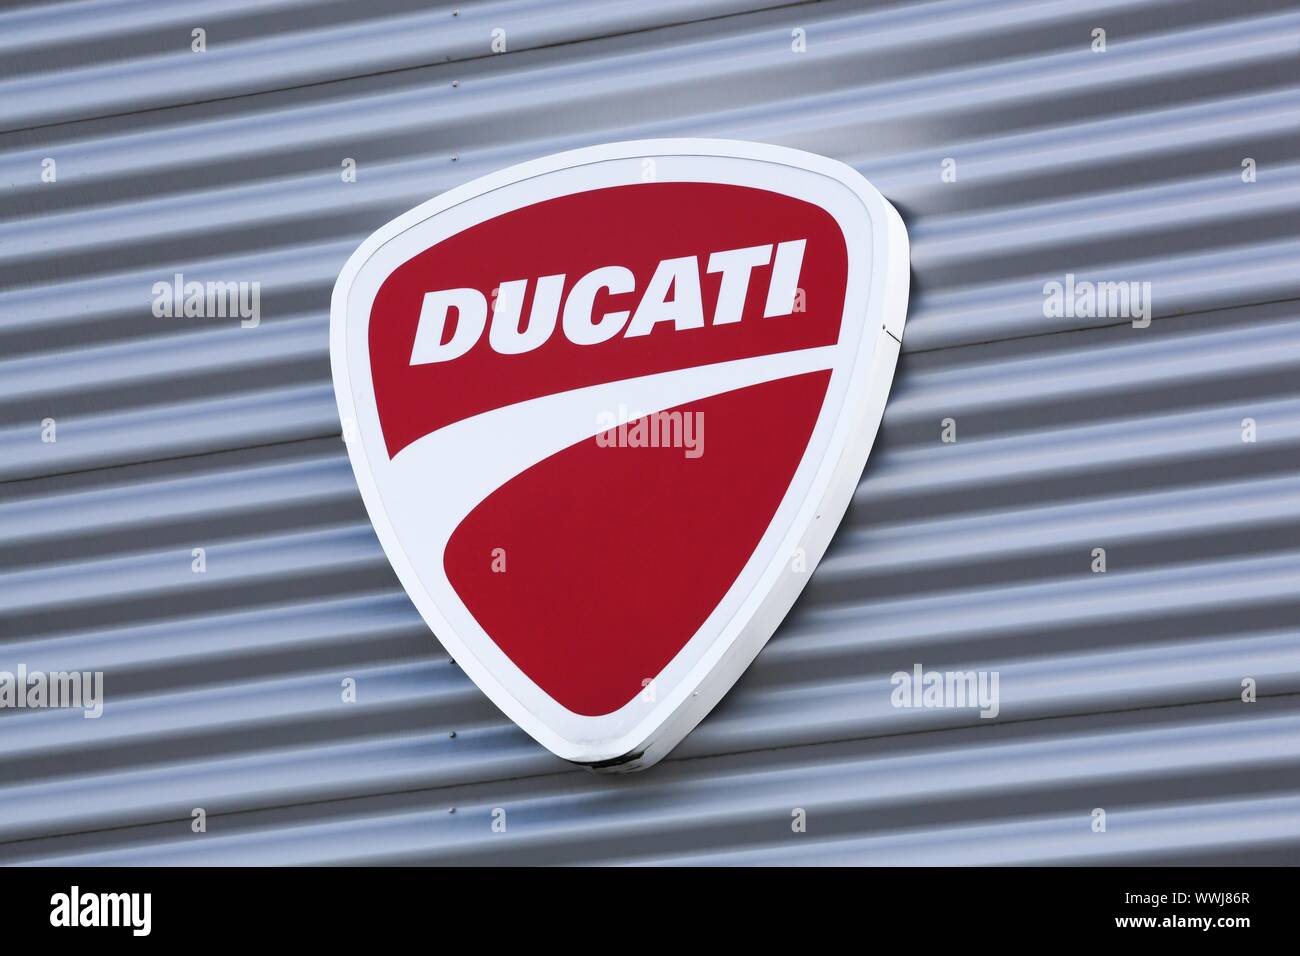 Lyon, France - 15 août 2019 : Ducati logo sur un mur. Ducati est une société italienne qui conçoit et fabrique des motocyclettes Banque D'Images